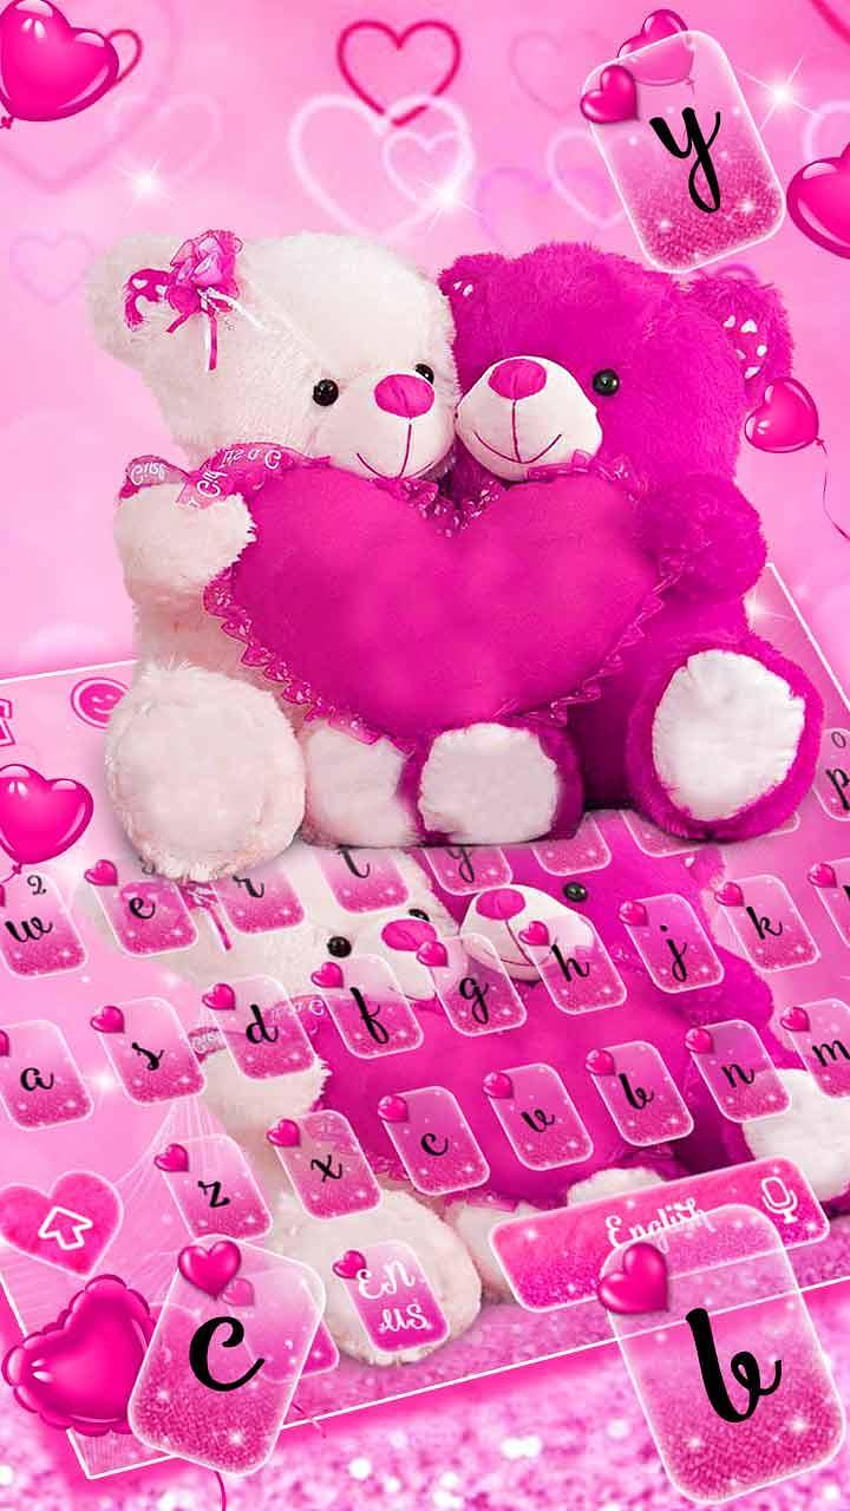 Pink teddy bear HD wallpapers | Pxfuel